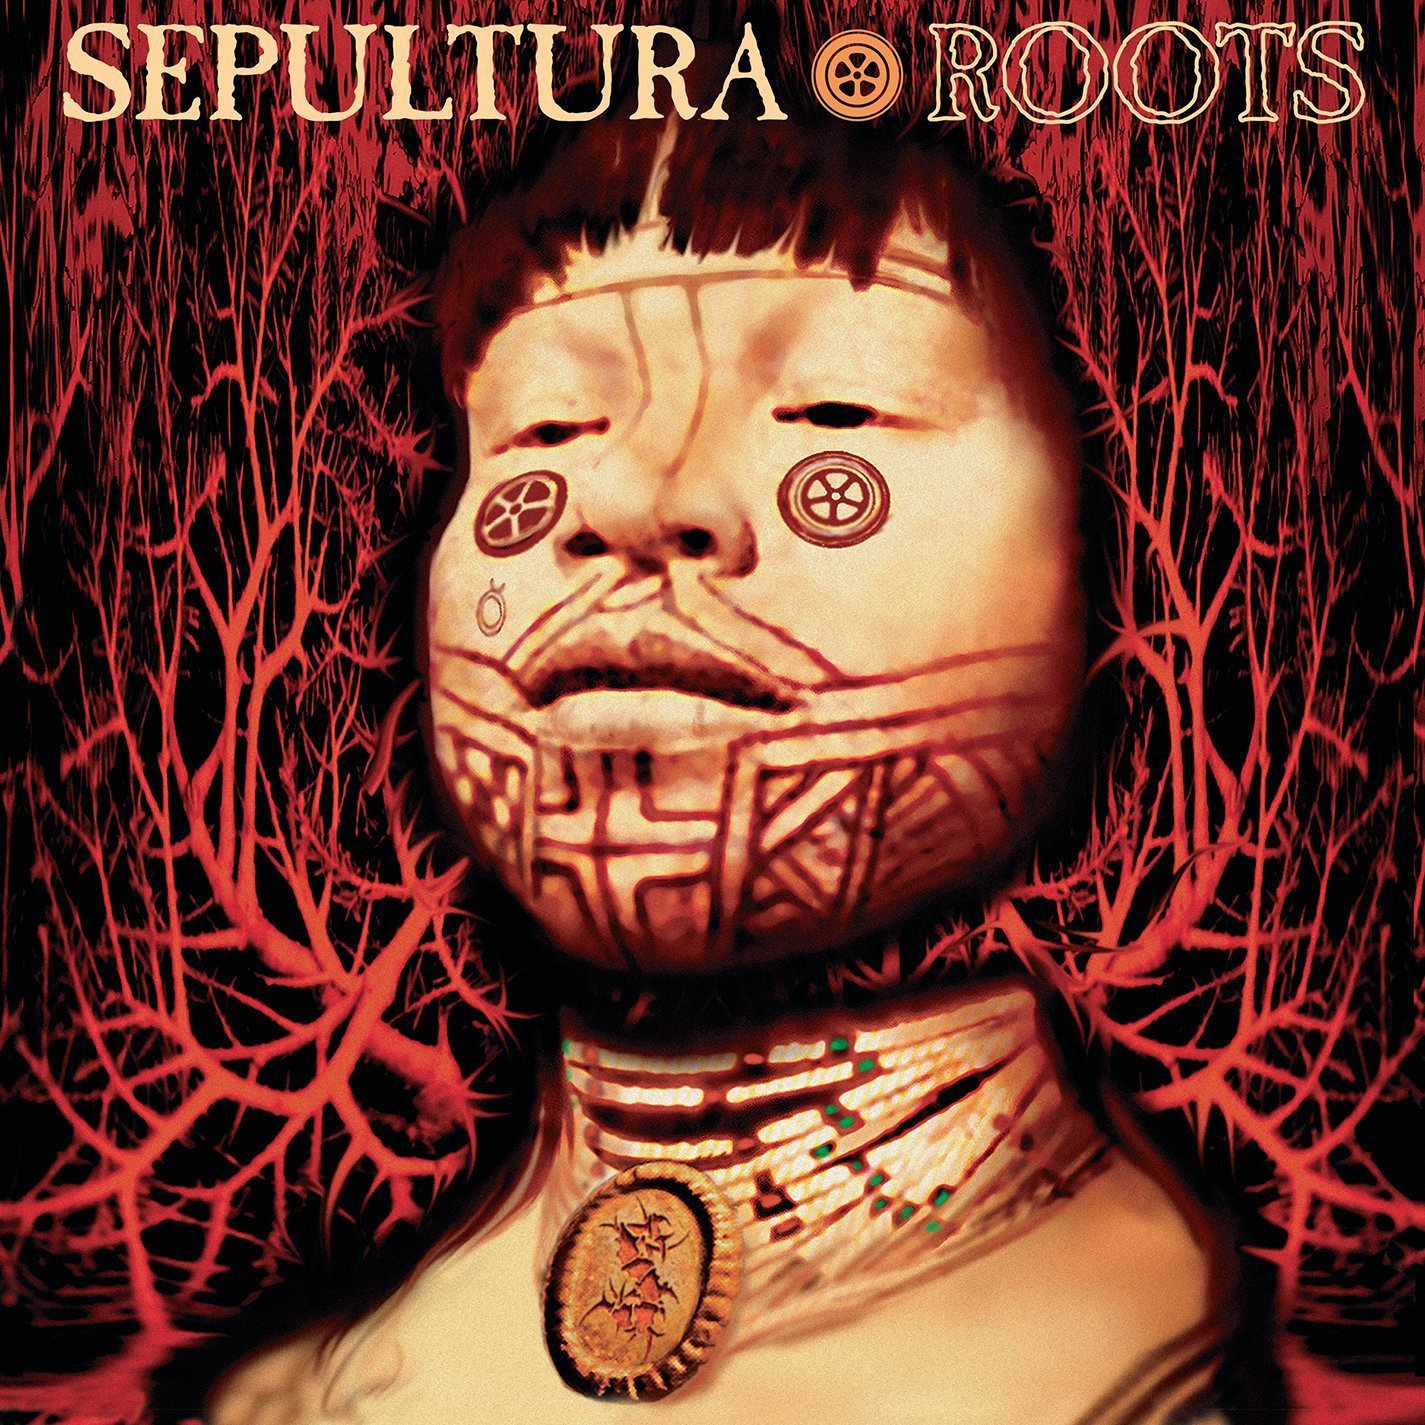 Sepultura - Roots 